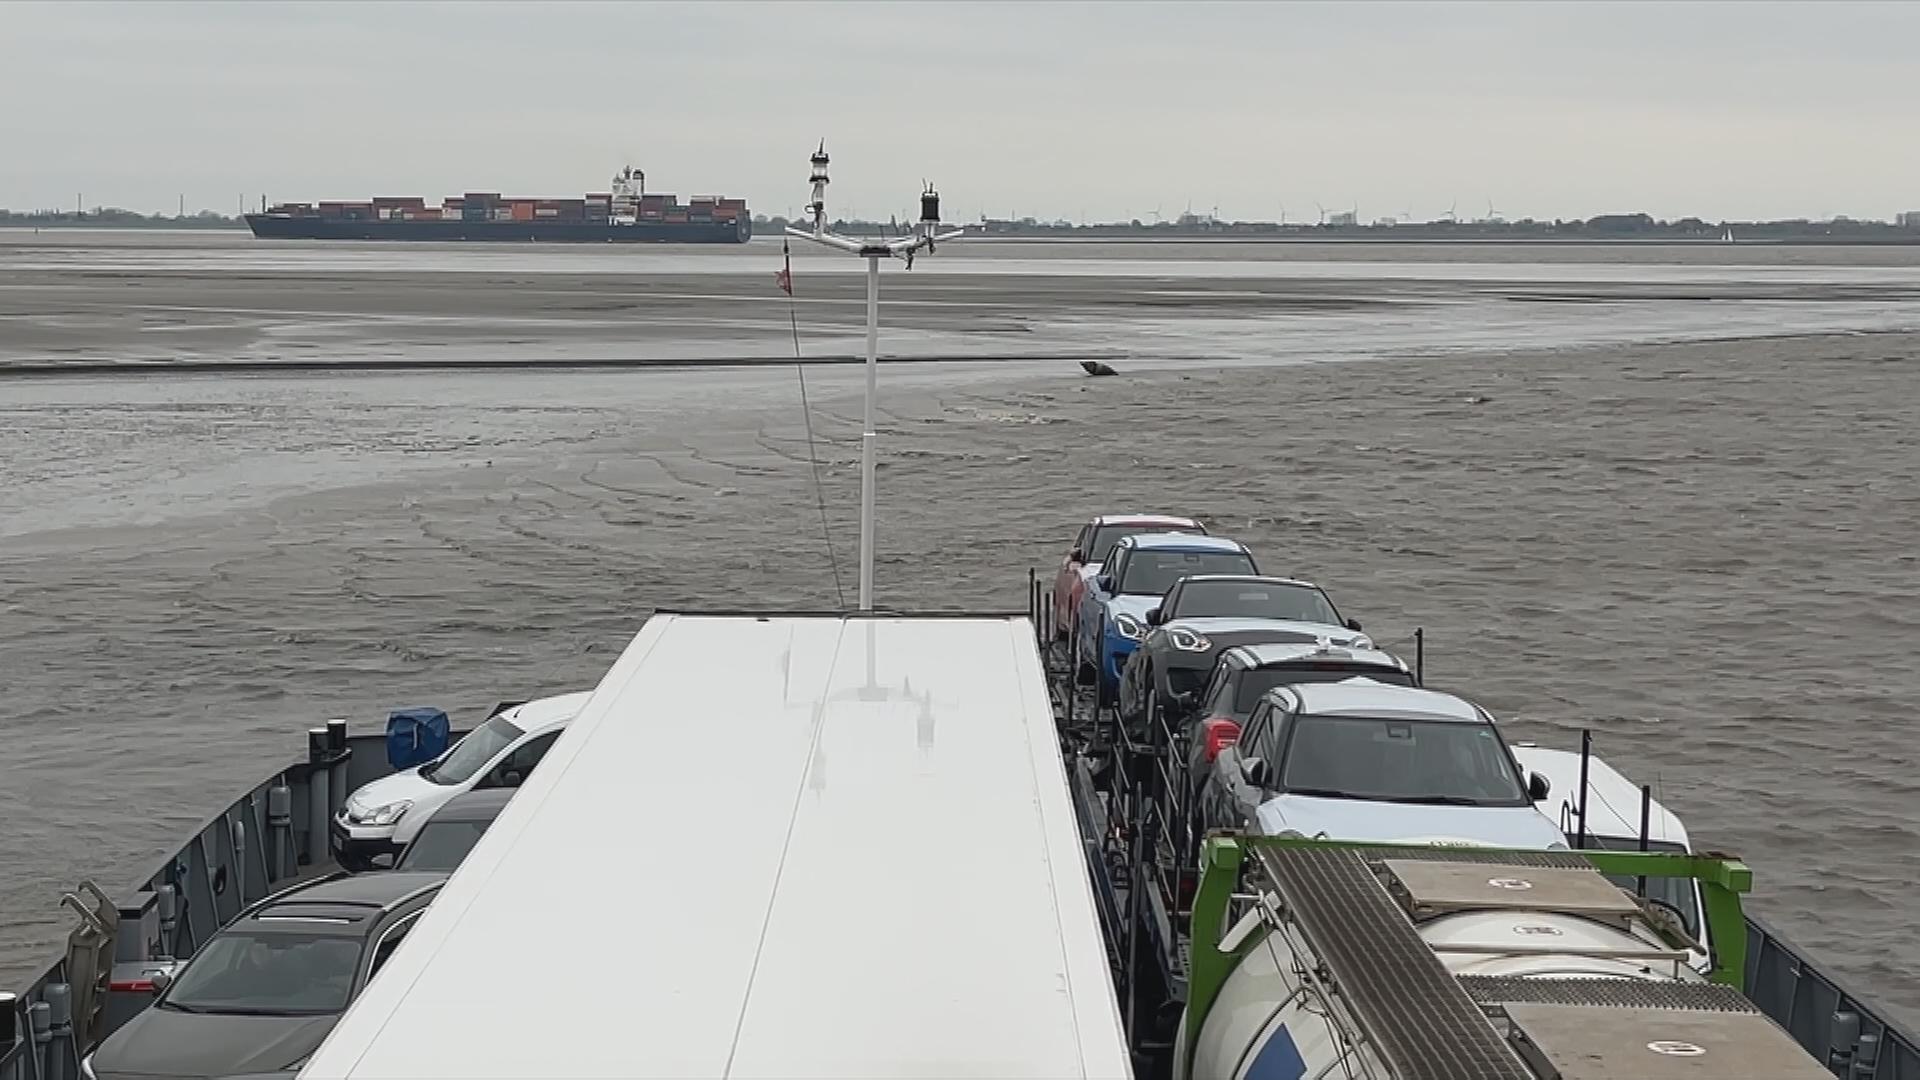 Teil einer Elbfähre, die im Schlick feststeckt. Im Hintergrund ist ein großes Conteinerschiff zu sehen. In der Elbe herrscht Ebbe.